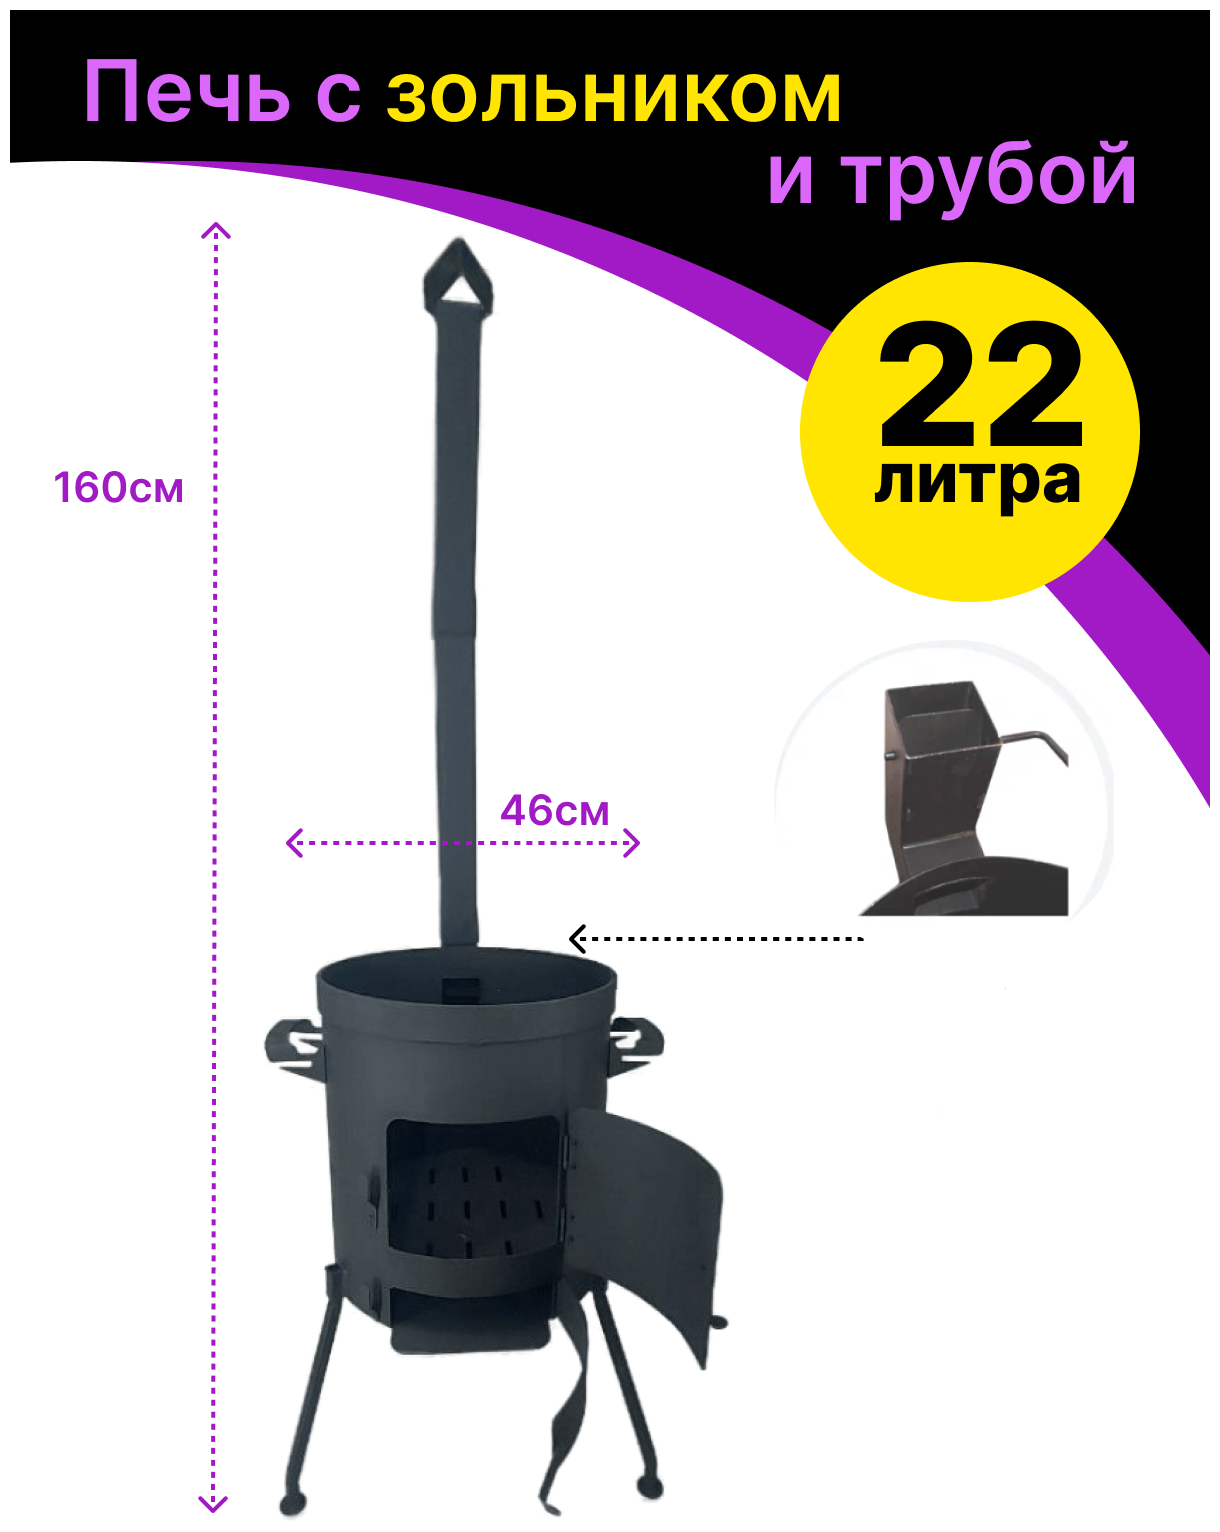 Печь усиленная (учаг) для казана с зольником и дымоходом 22 литра